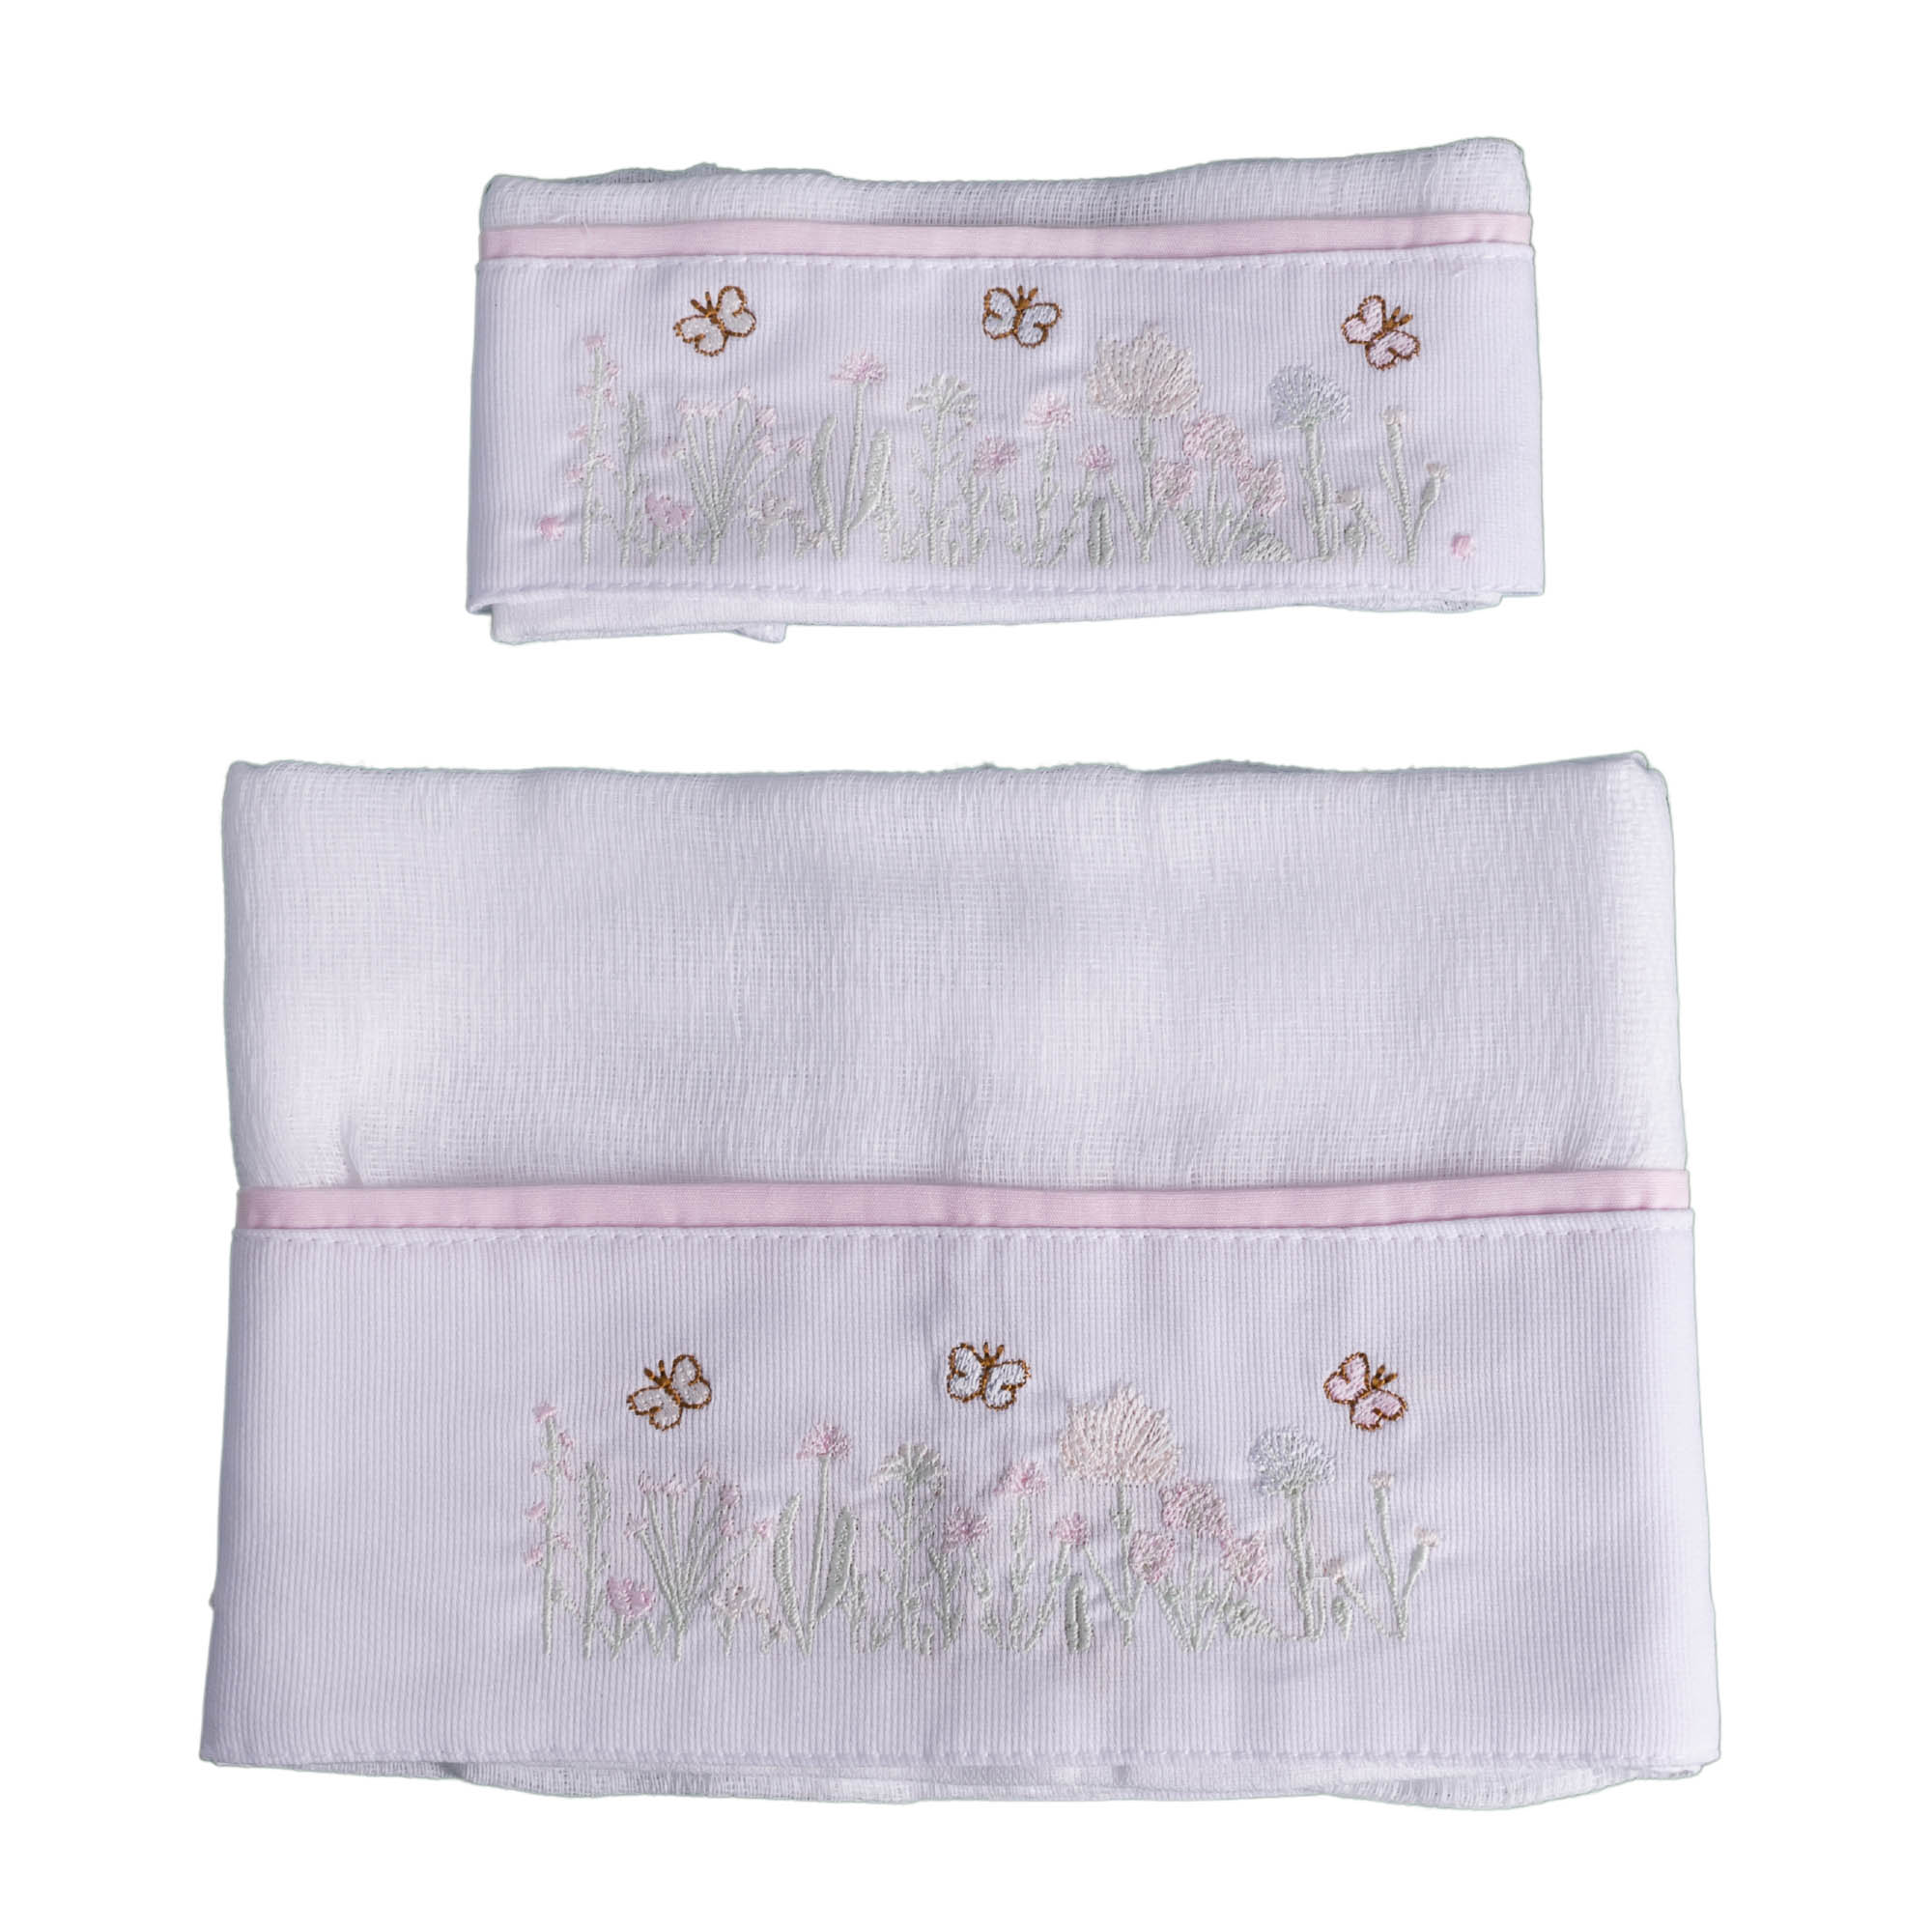 Kit toalha de boca com 2 peças borboleta - Branco e rosa